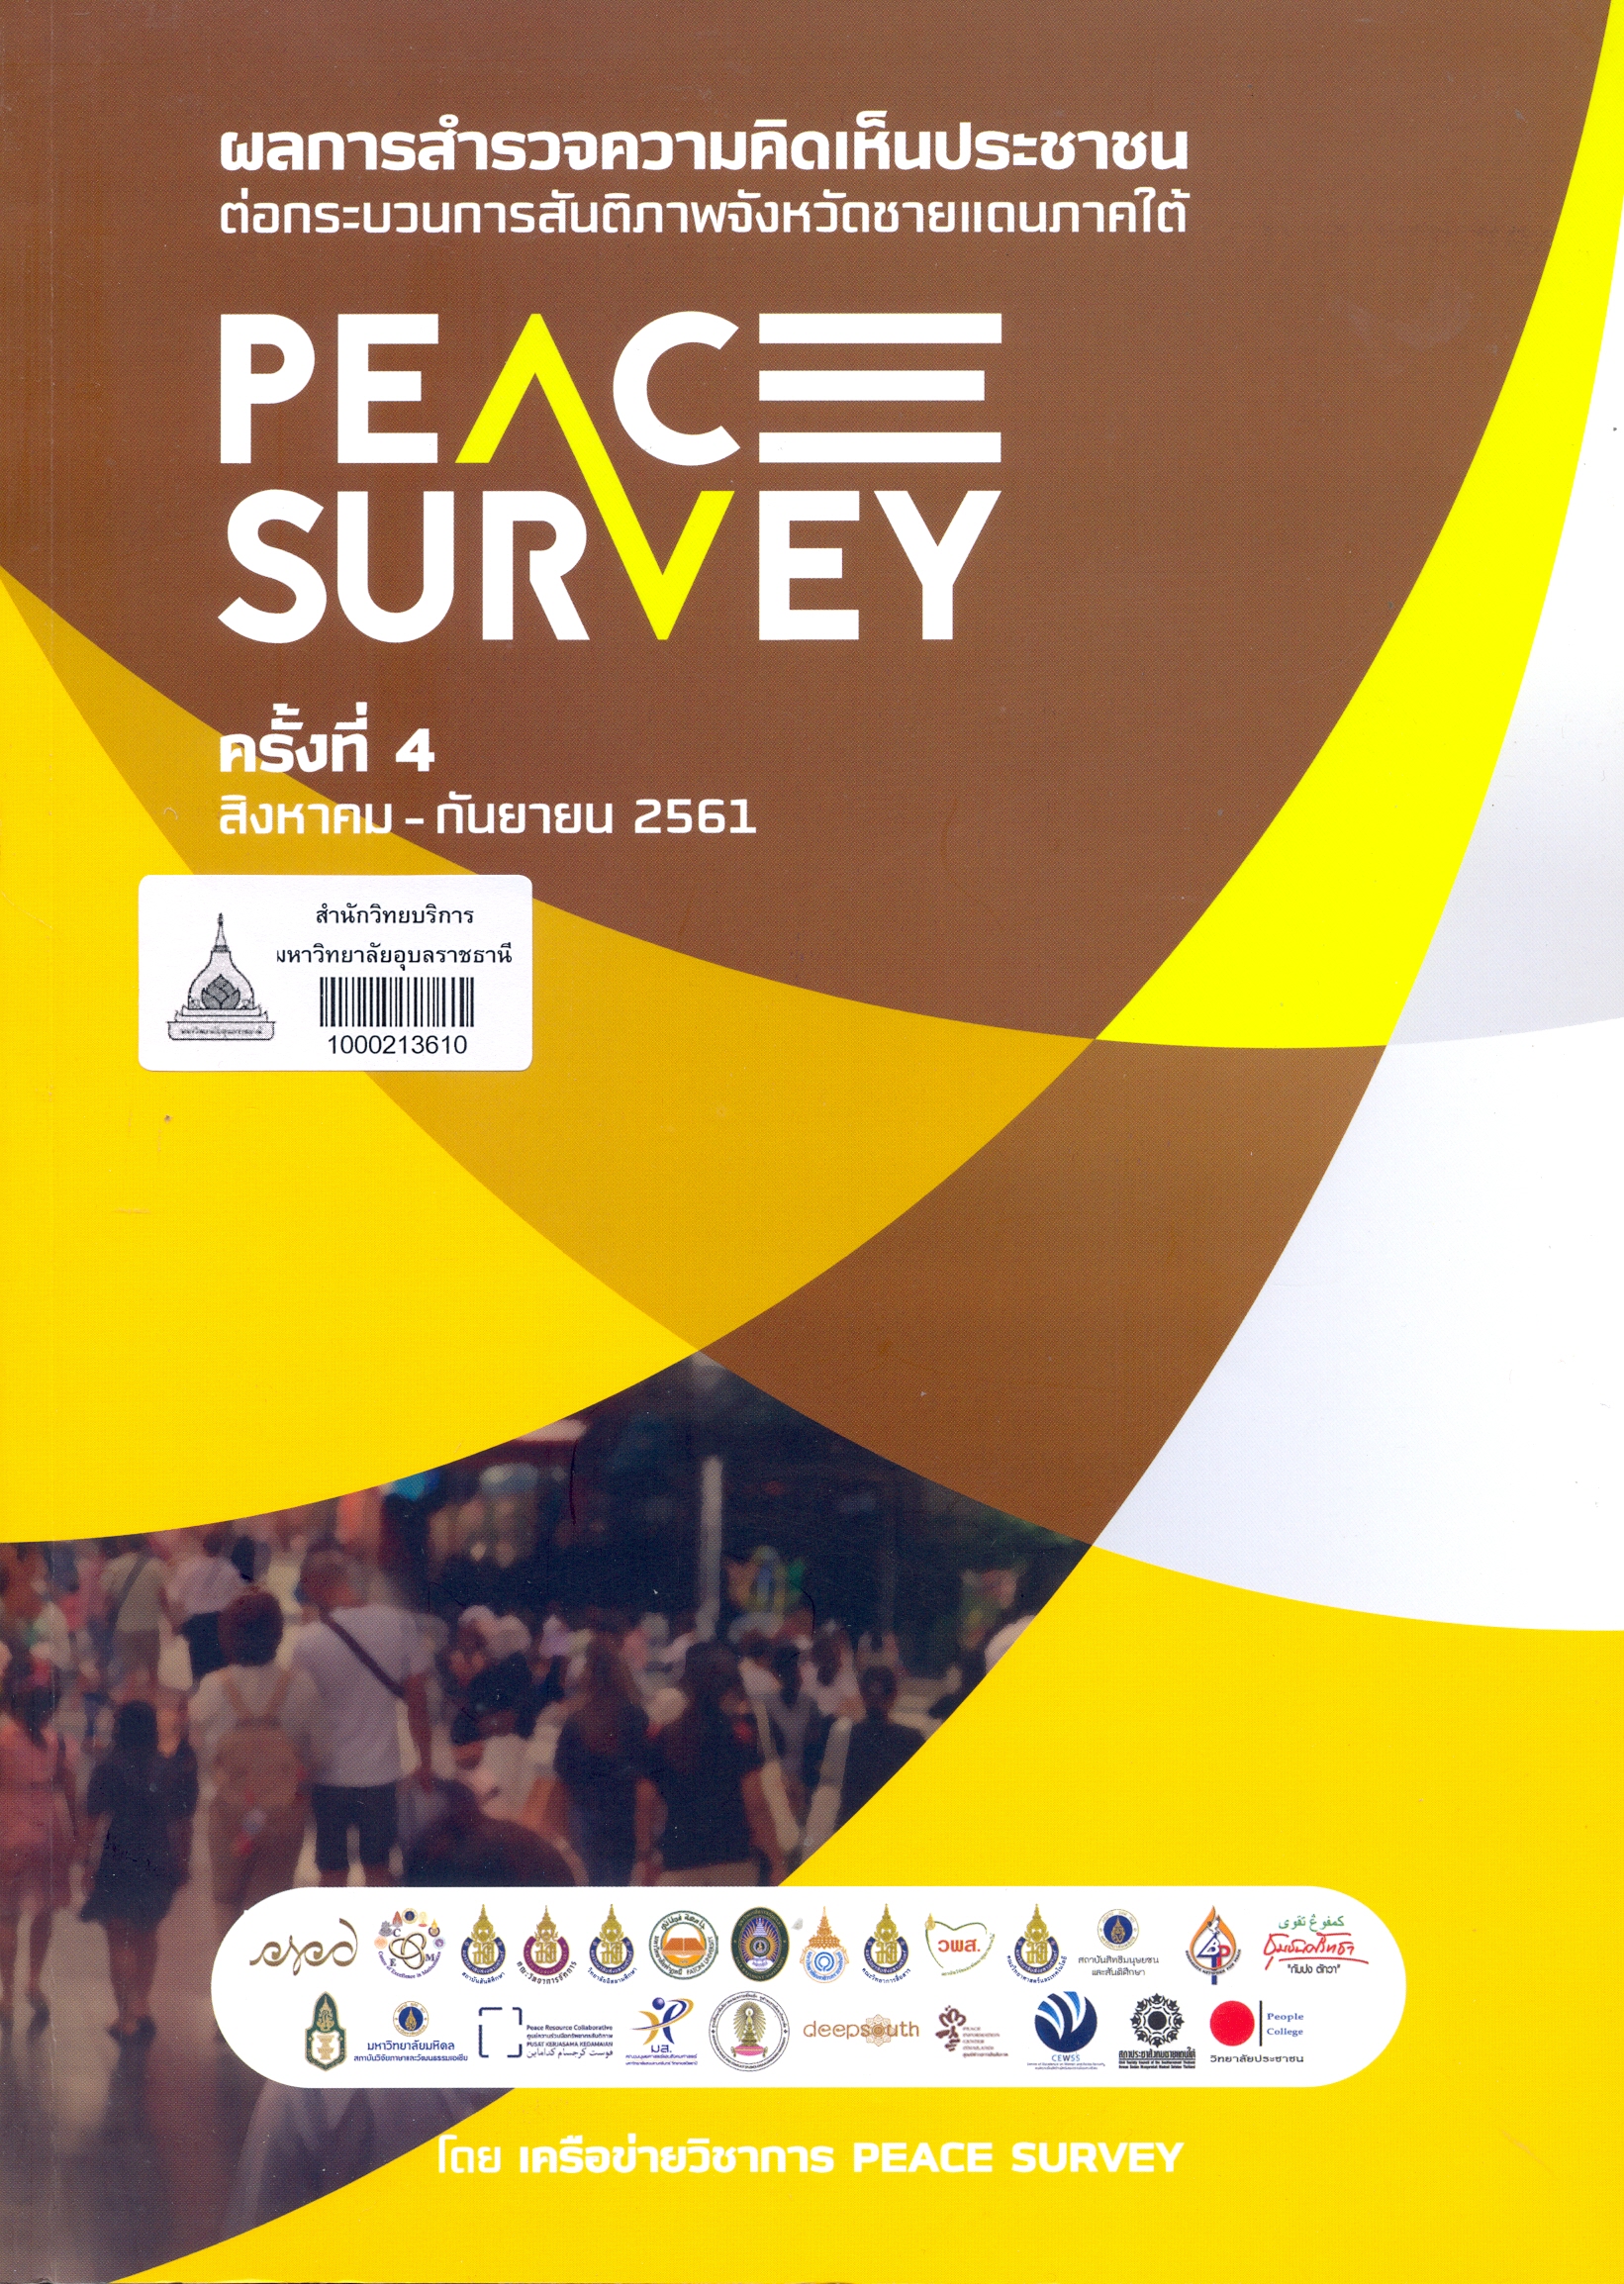 ผลการสำรวจความคิดเห็นประชาชนต่อกระบวนการสันติภาพจังหวัดชายแดนภาคใต้ Peace survey